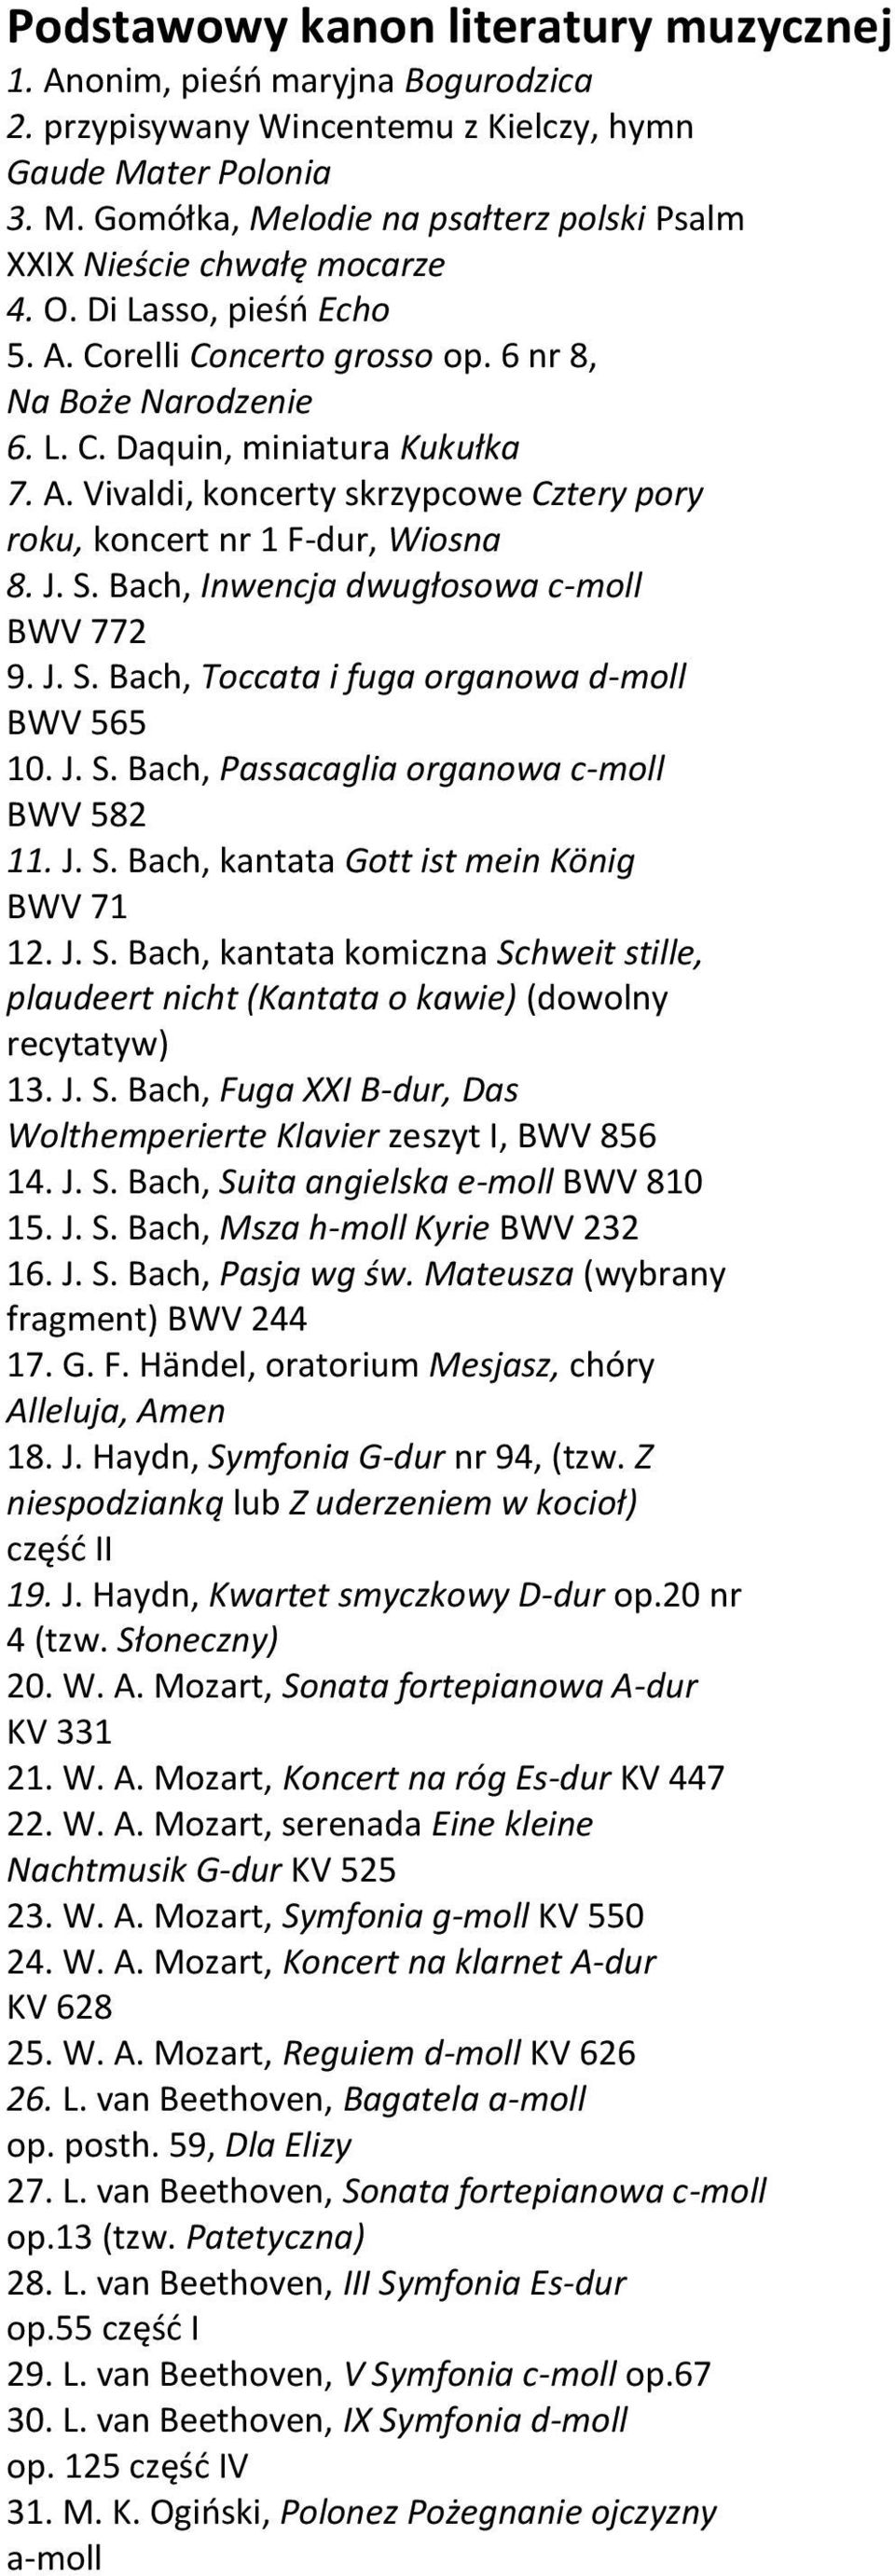 J. S. Bach, Inwencja dwugłosowa c-moll BWV 772 9. J. S. Bach, Toccata i fuga organowa d-moll BWV 565 10. J. S. Bach, Passacaglia organowa c-moll BWV 582 11. J. S. Bach, kantata Gott ist mein König BWV 71 12.